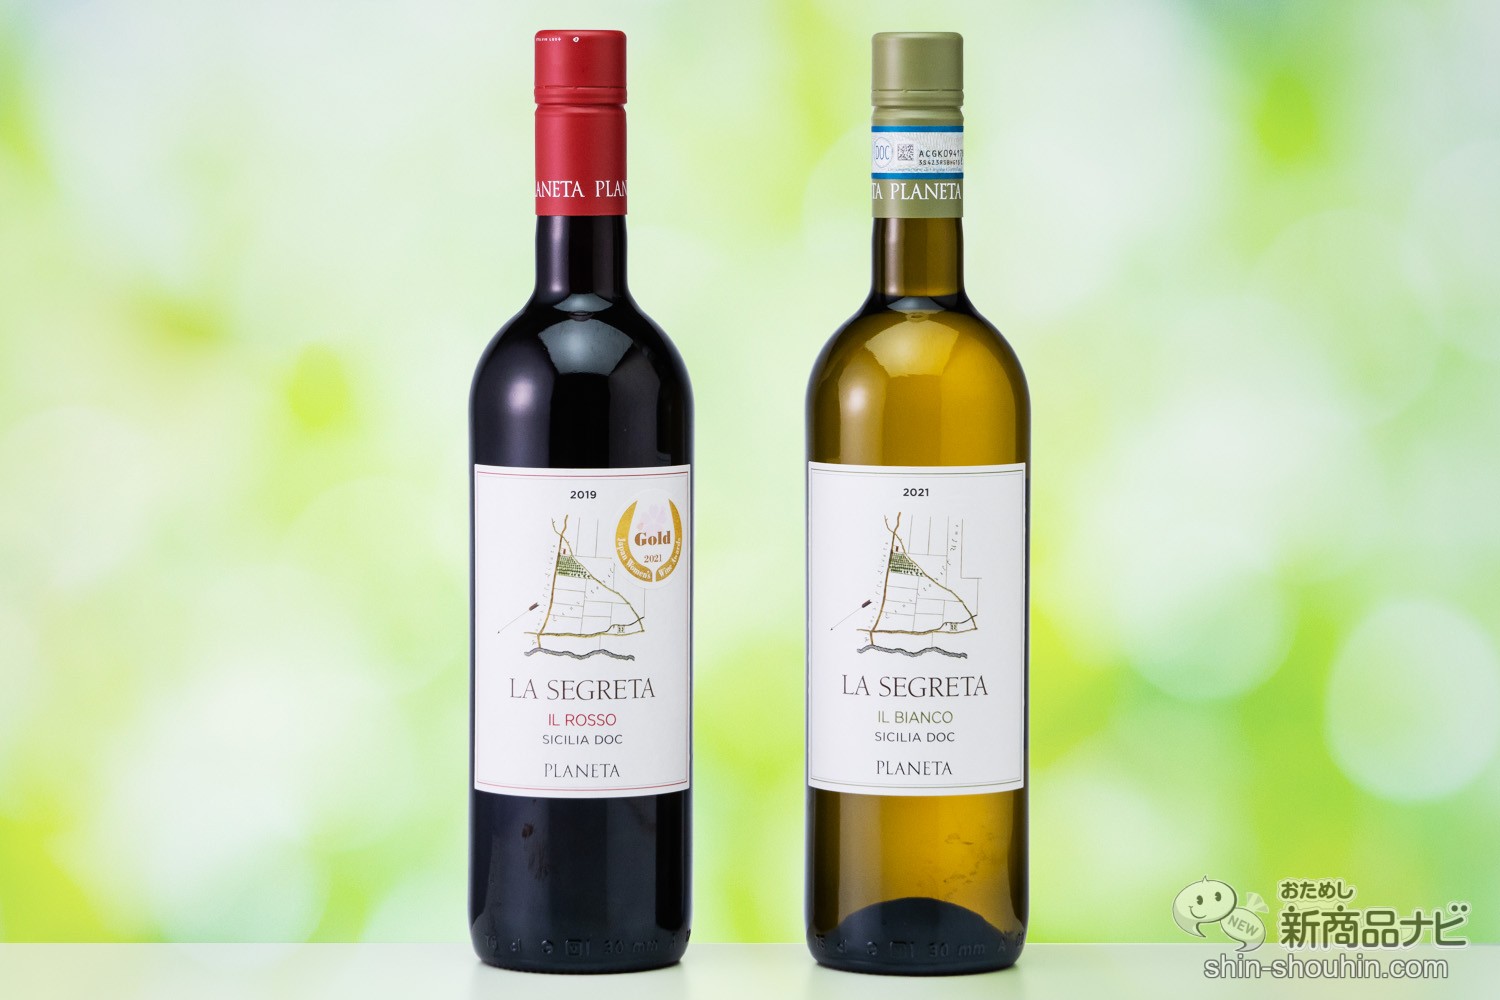 おためし新商品ナビ » Blog Archive »  シチリアの代表的なプラネタ社のワイン『ラ・セグレタ・ロッソ』『ラ・セグレタ・ビアンコ』を気軽に食卓で楽しもう！